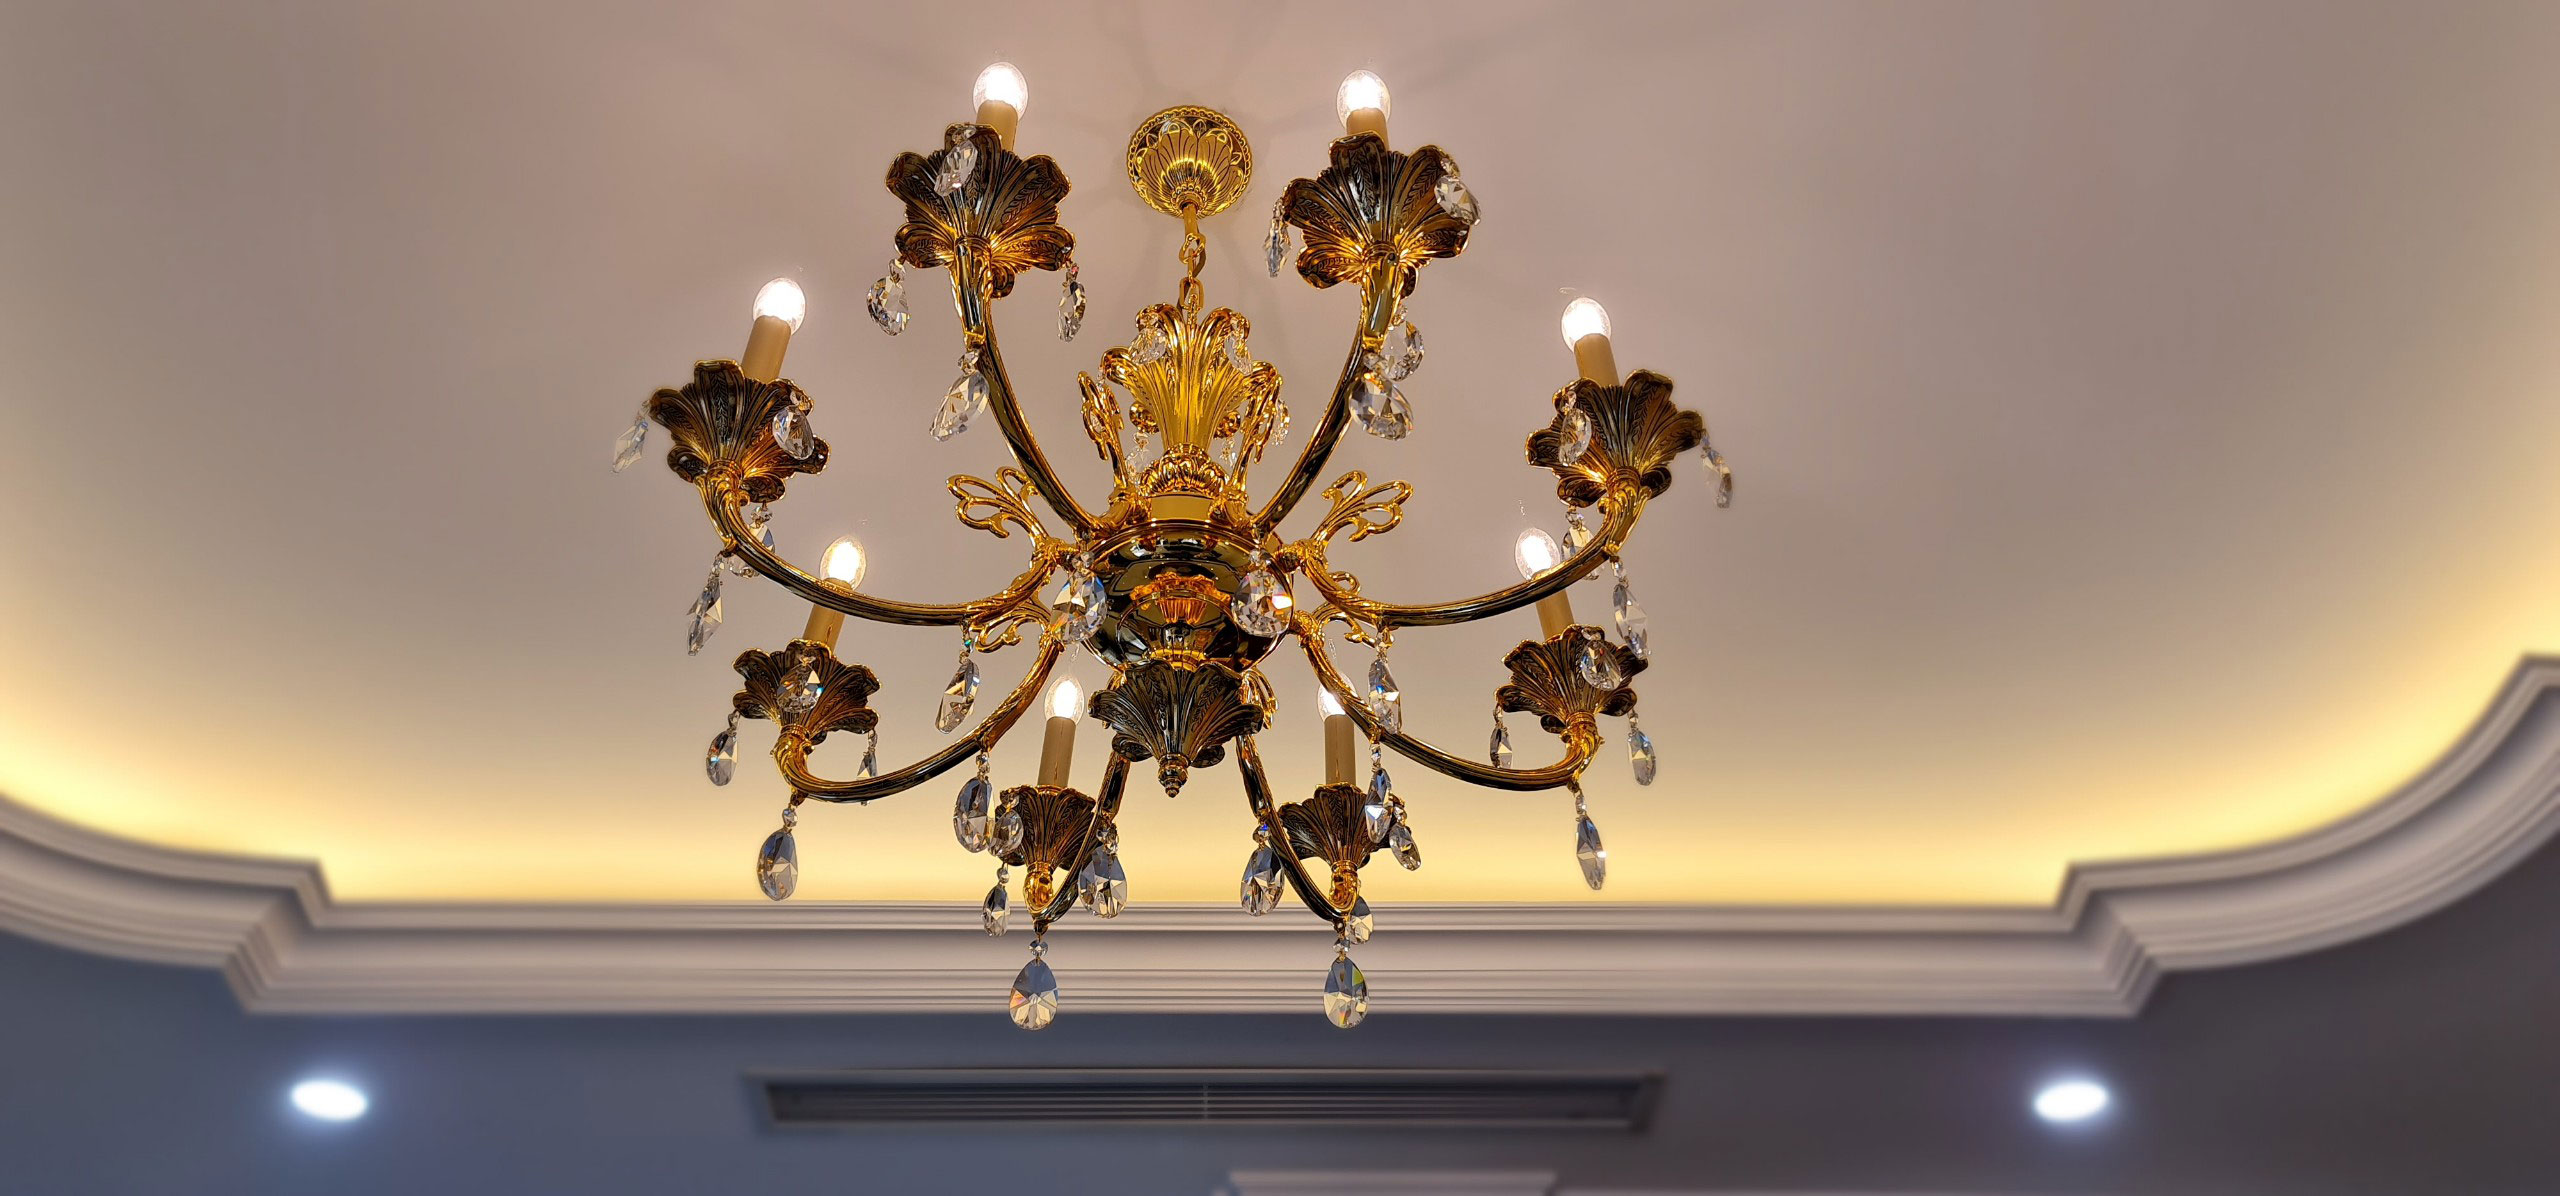 Đèn chùm đồng pha lê cây nến cổ điển tinh tế cho thiết kế thi công phòng khách